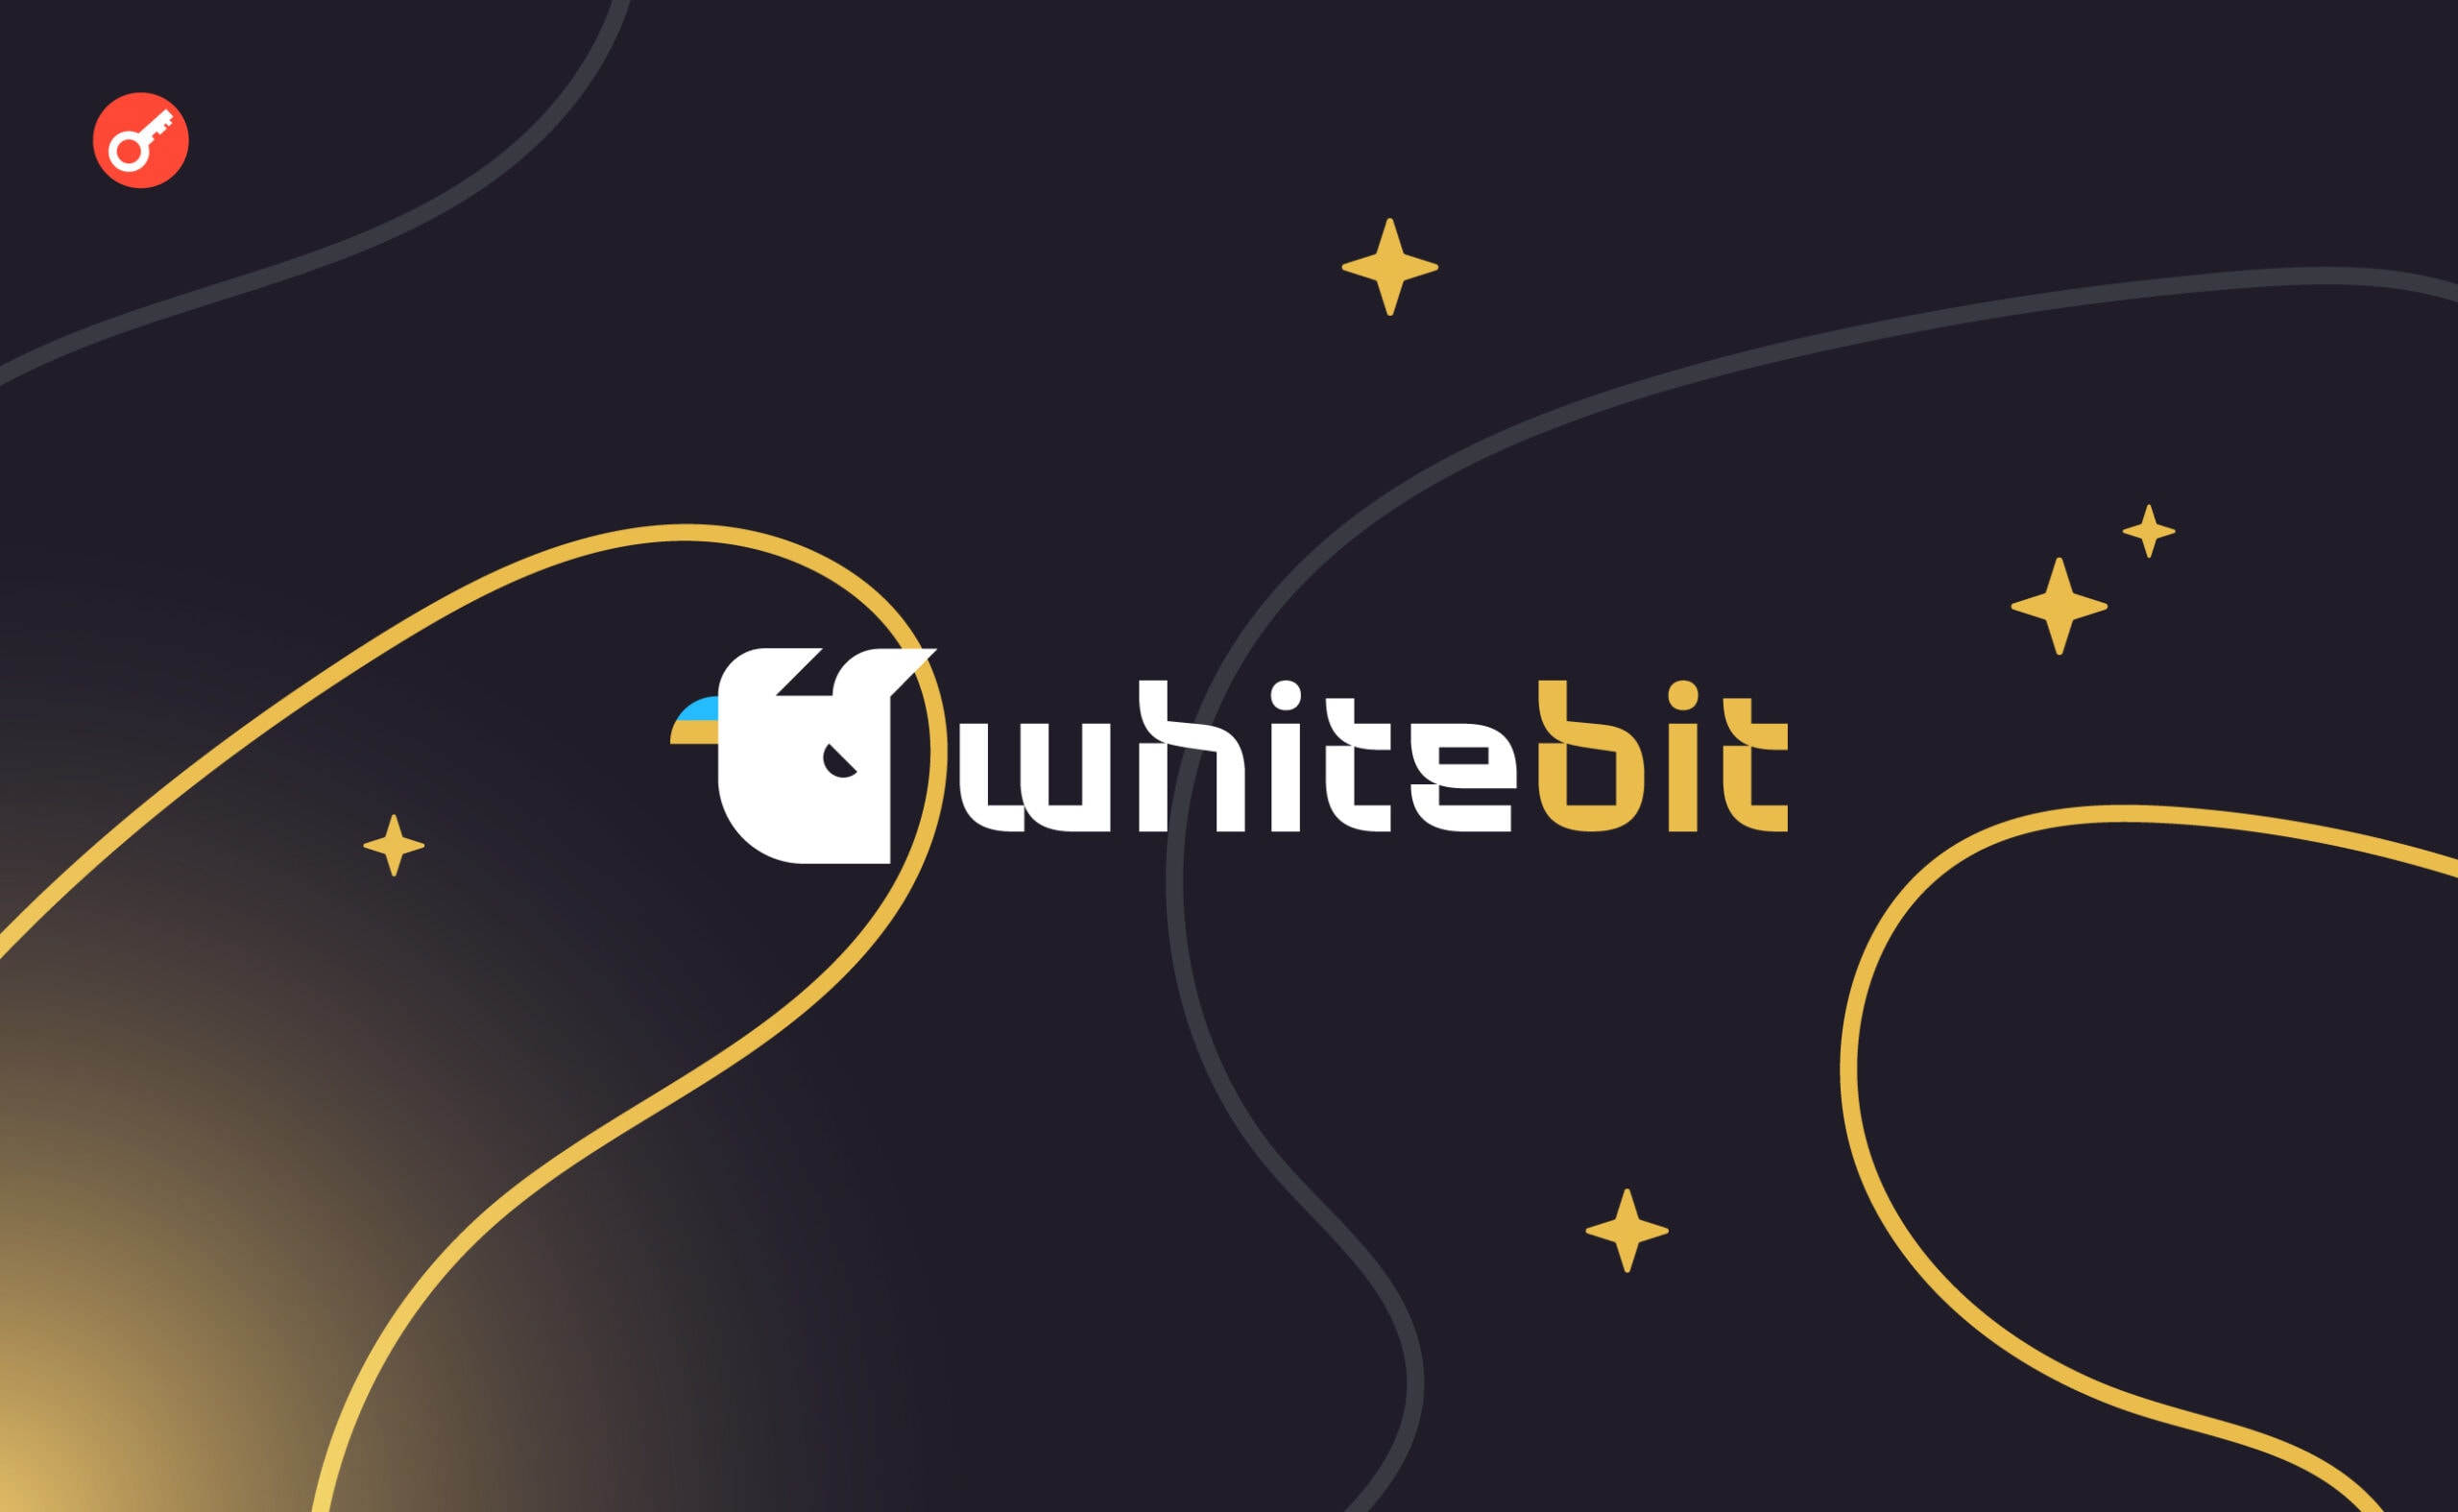 В WhiteBIT рассказали о новых возможностях WhiteBIT-карты. Заглавный коллаж новости.